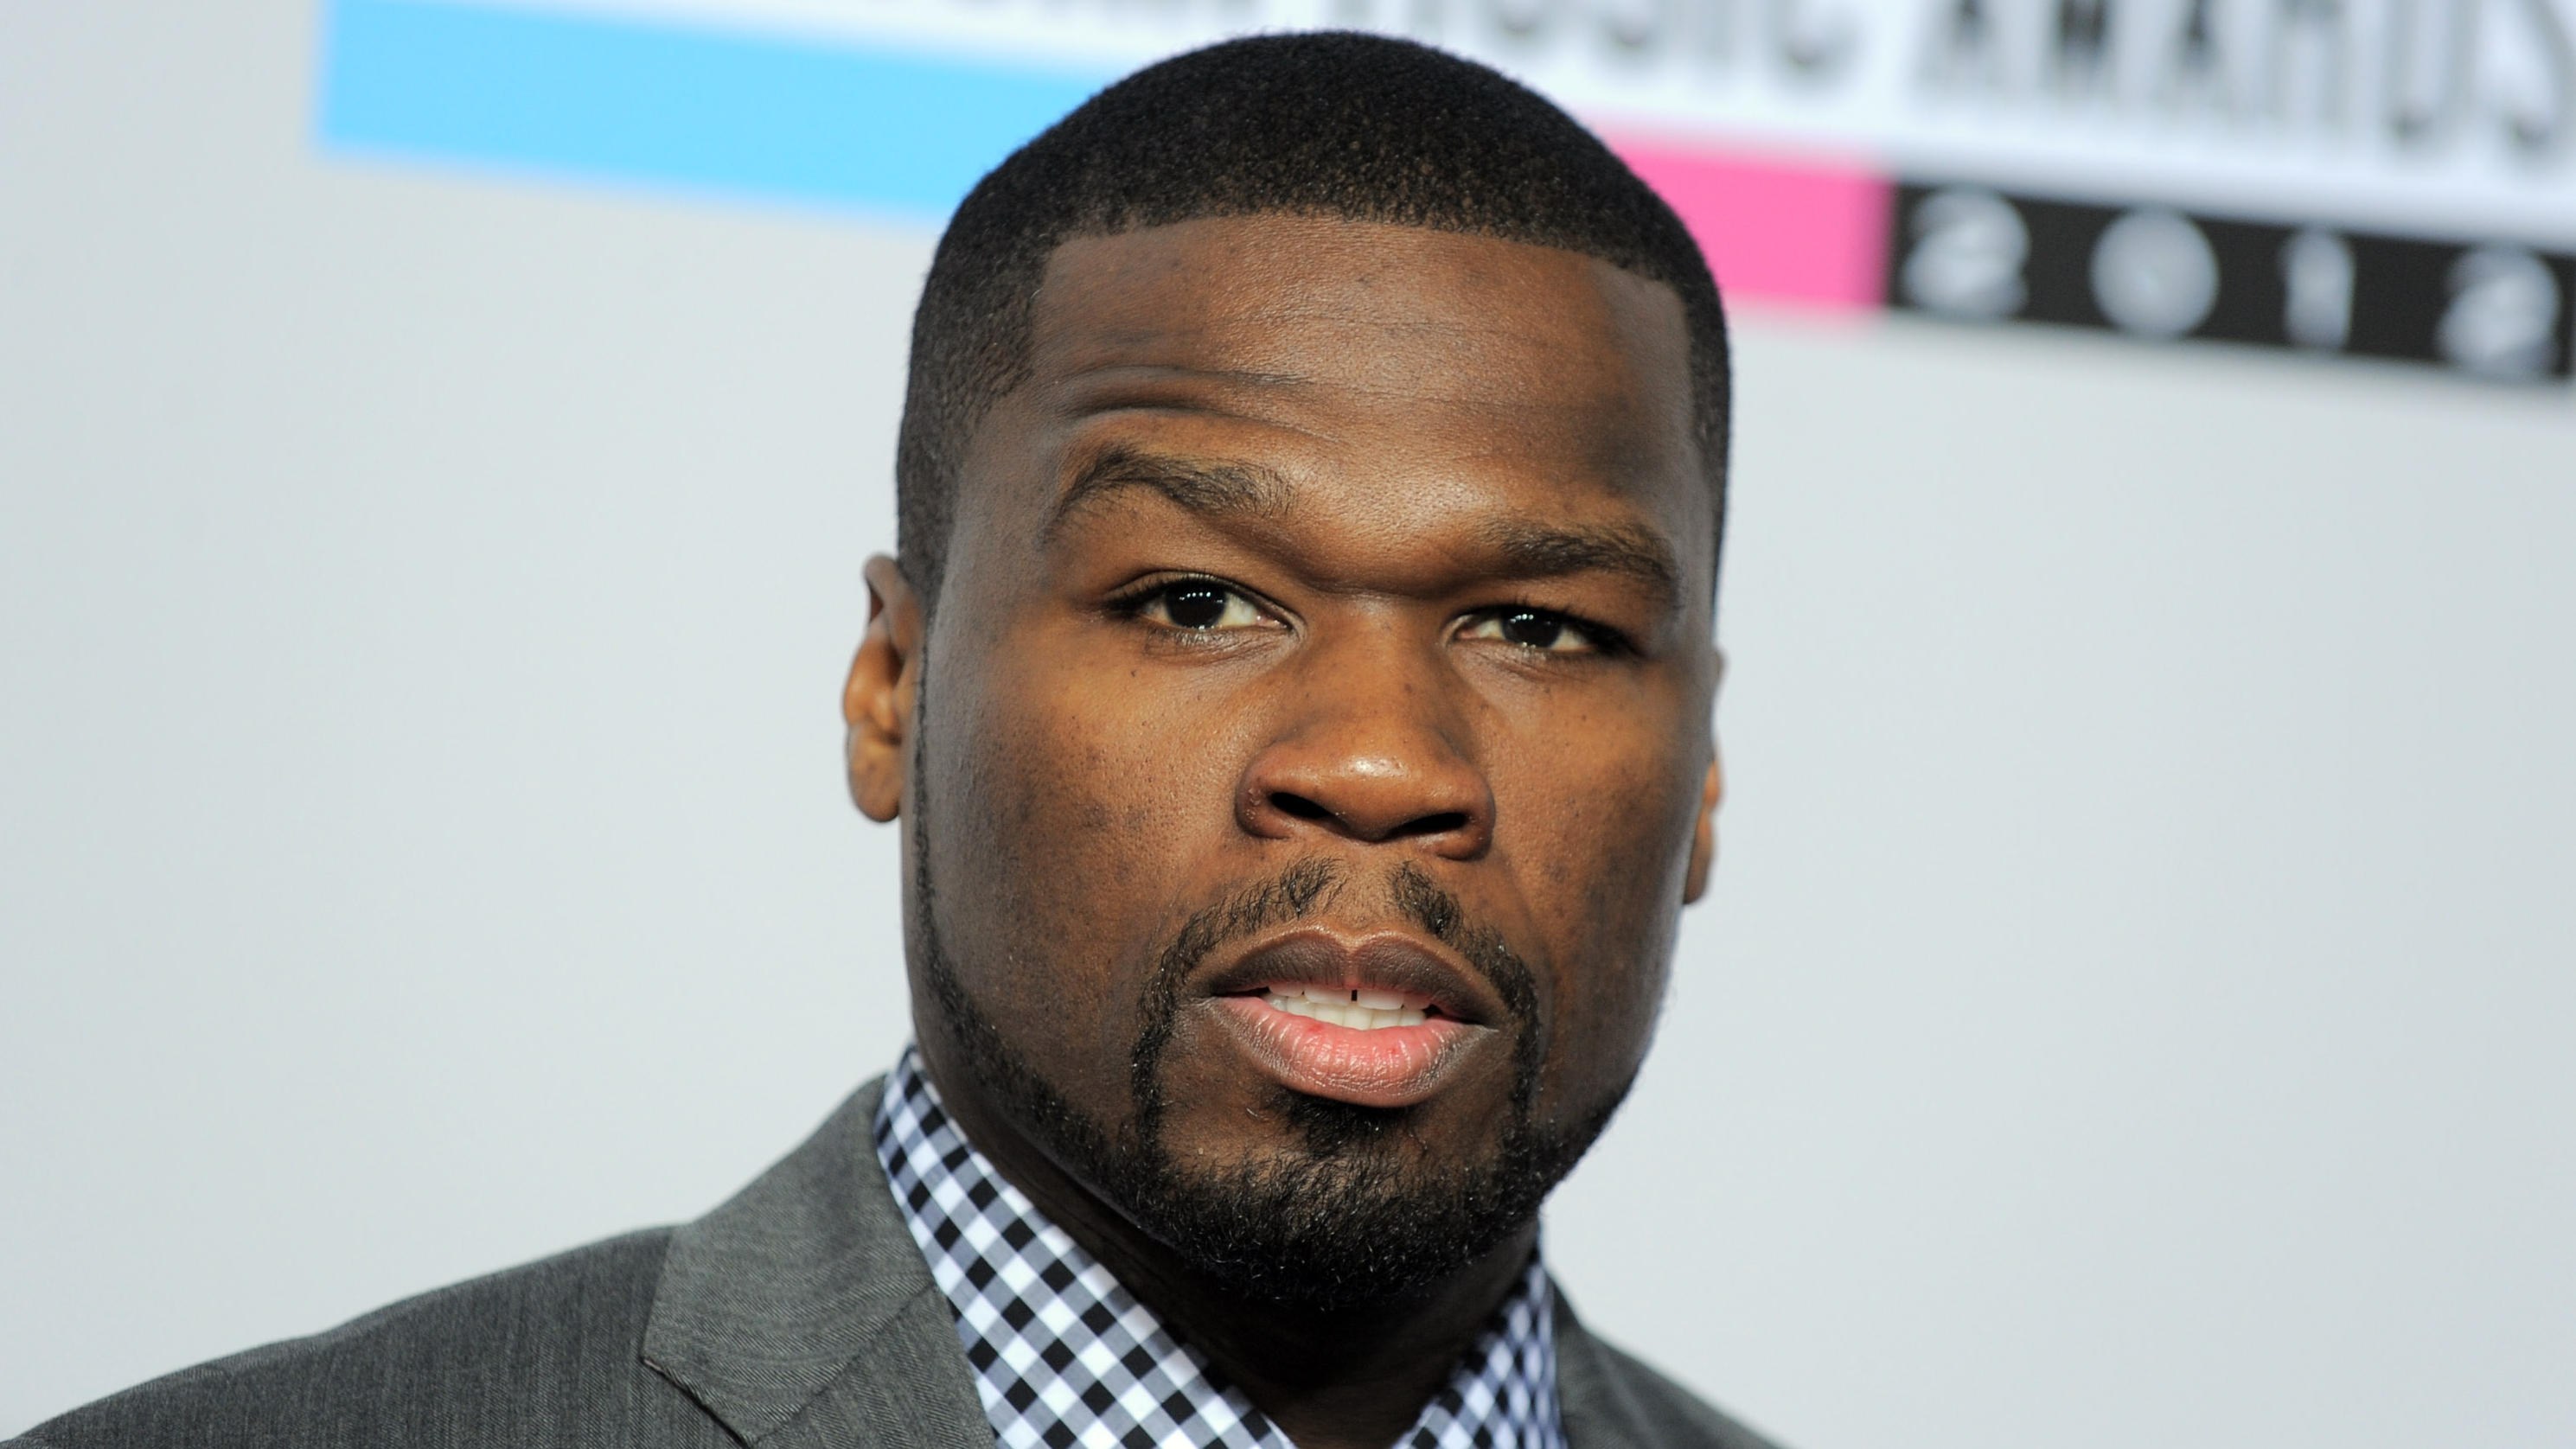 Acusan a 50 Cent de usar "palabras indecentes" en Saint Kitts